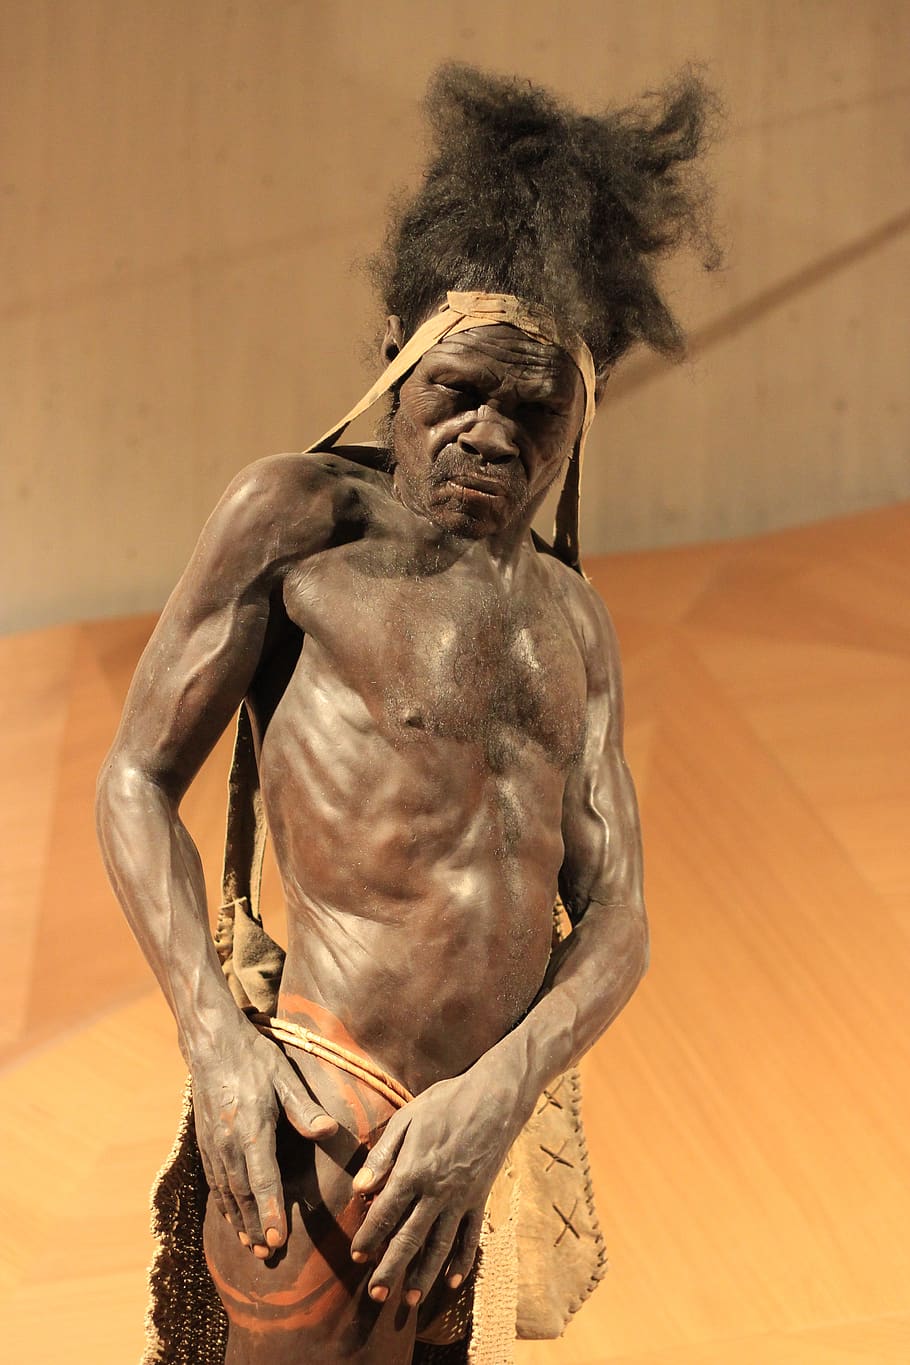 neanderthal, zaman batu, manusia gua, museum, gambar, bertelanjang dada, laki-laki, dalam ruangan, emosi, dewasa